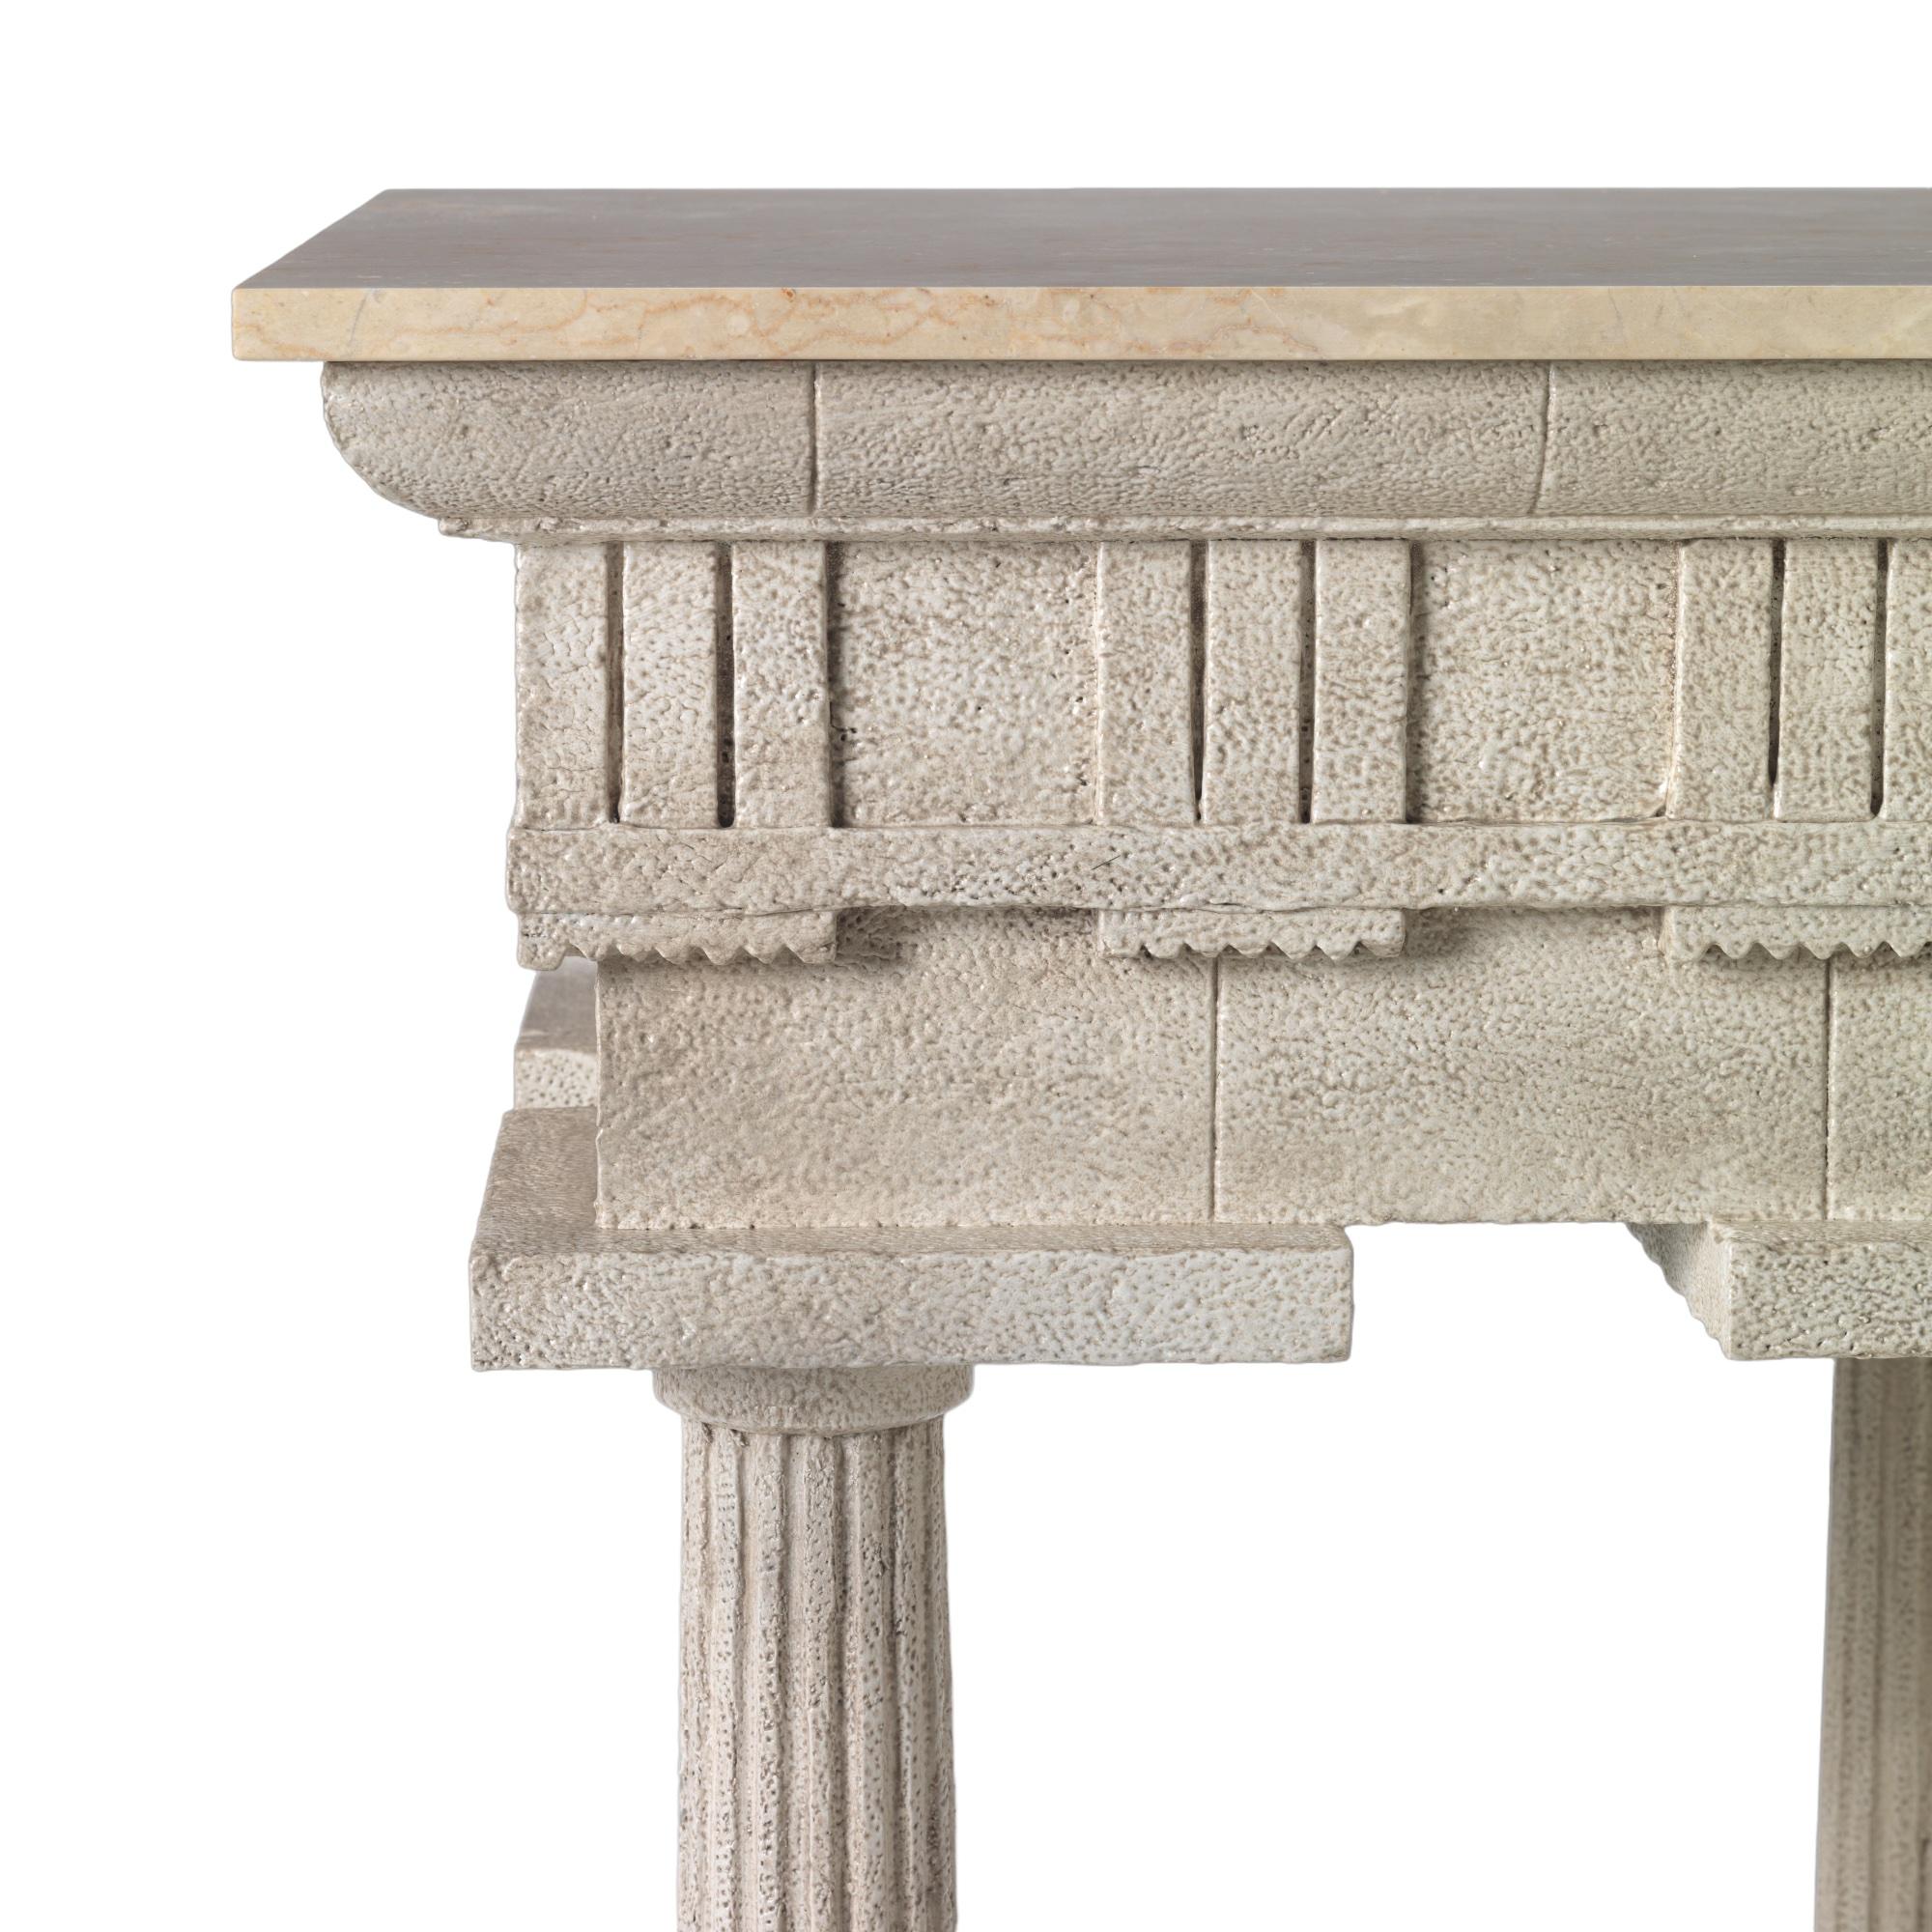 Un exceptionnel piédestal classique de conception Grand Tour, inspiré du temple de Paestum. Sculpté en acajou et peint en pierre vieillie par des spécialistes, avec un plateau en marbre légèrement vieilli.